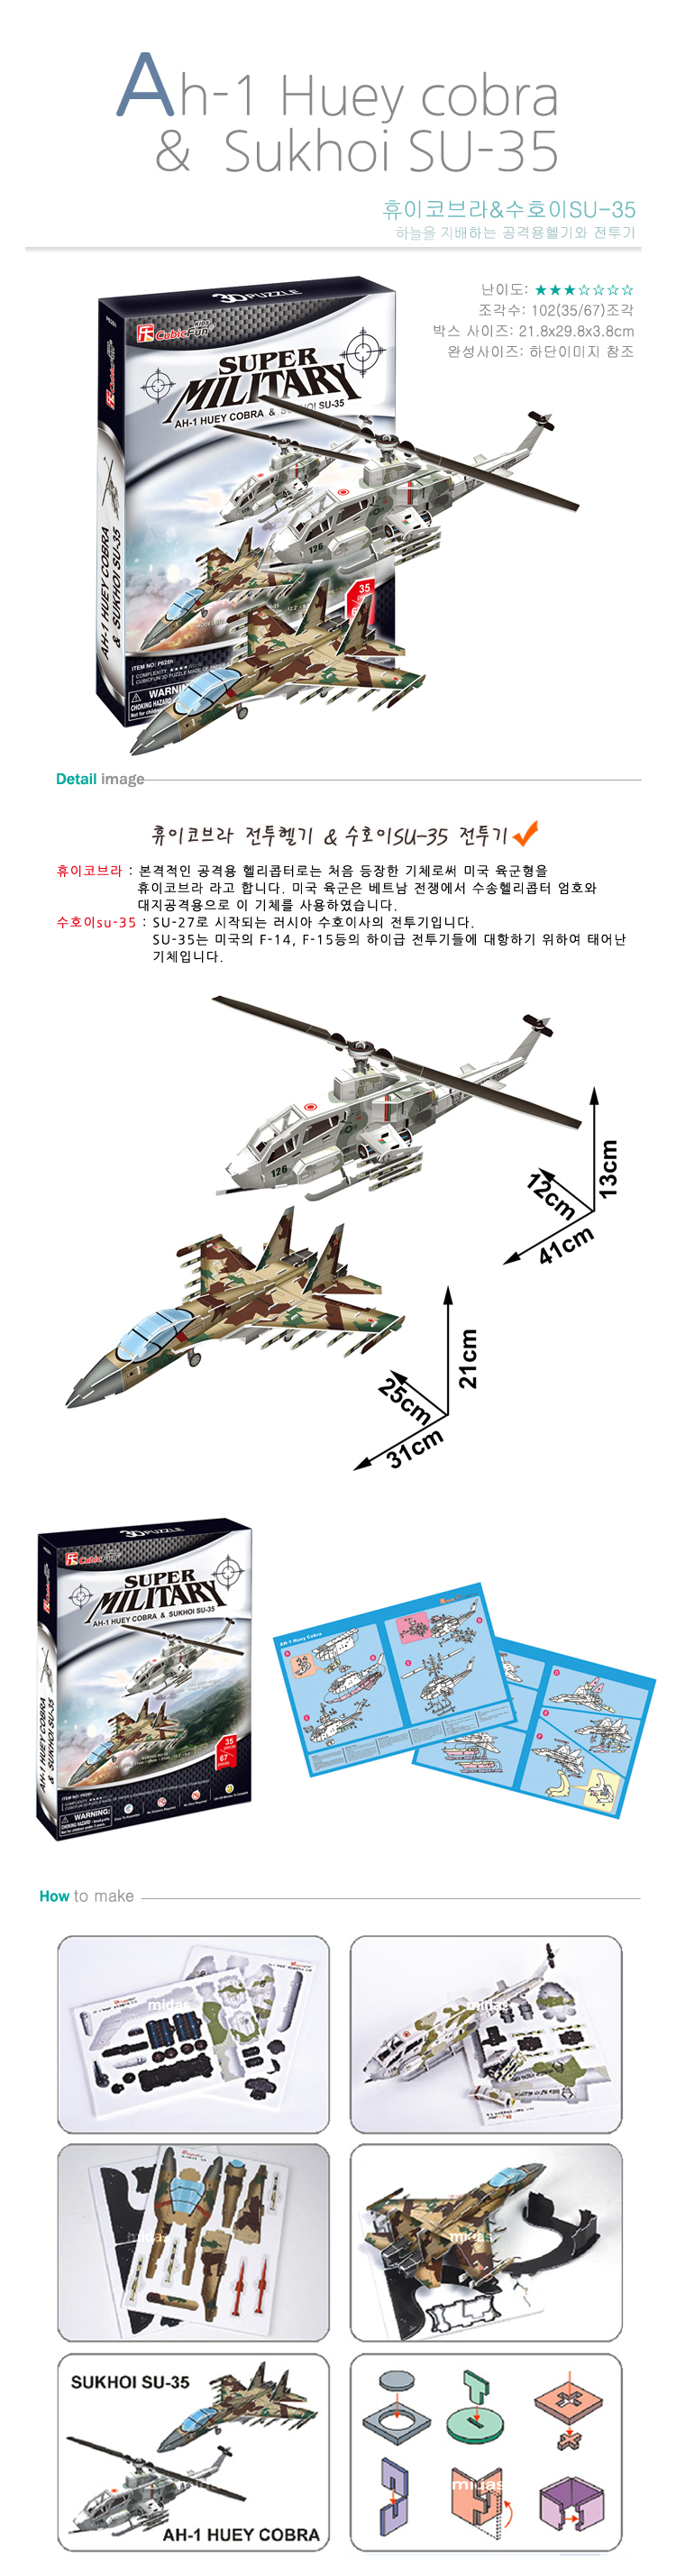 [3D 입체퍼즐] AH-1 휴이 코브라와 수호이 SU-35, P628h